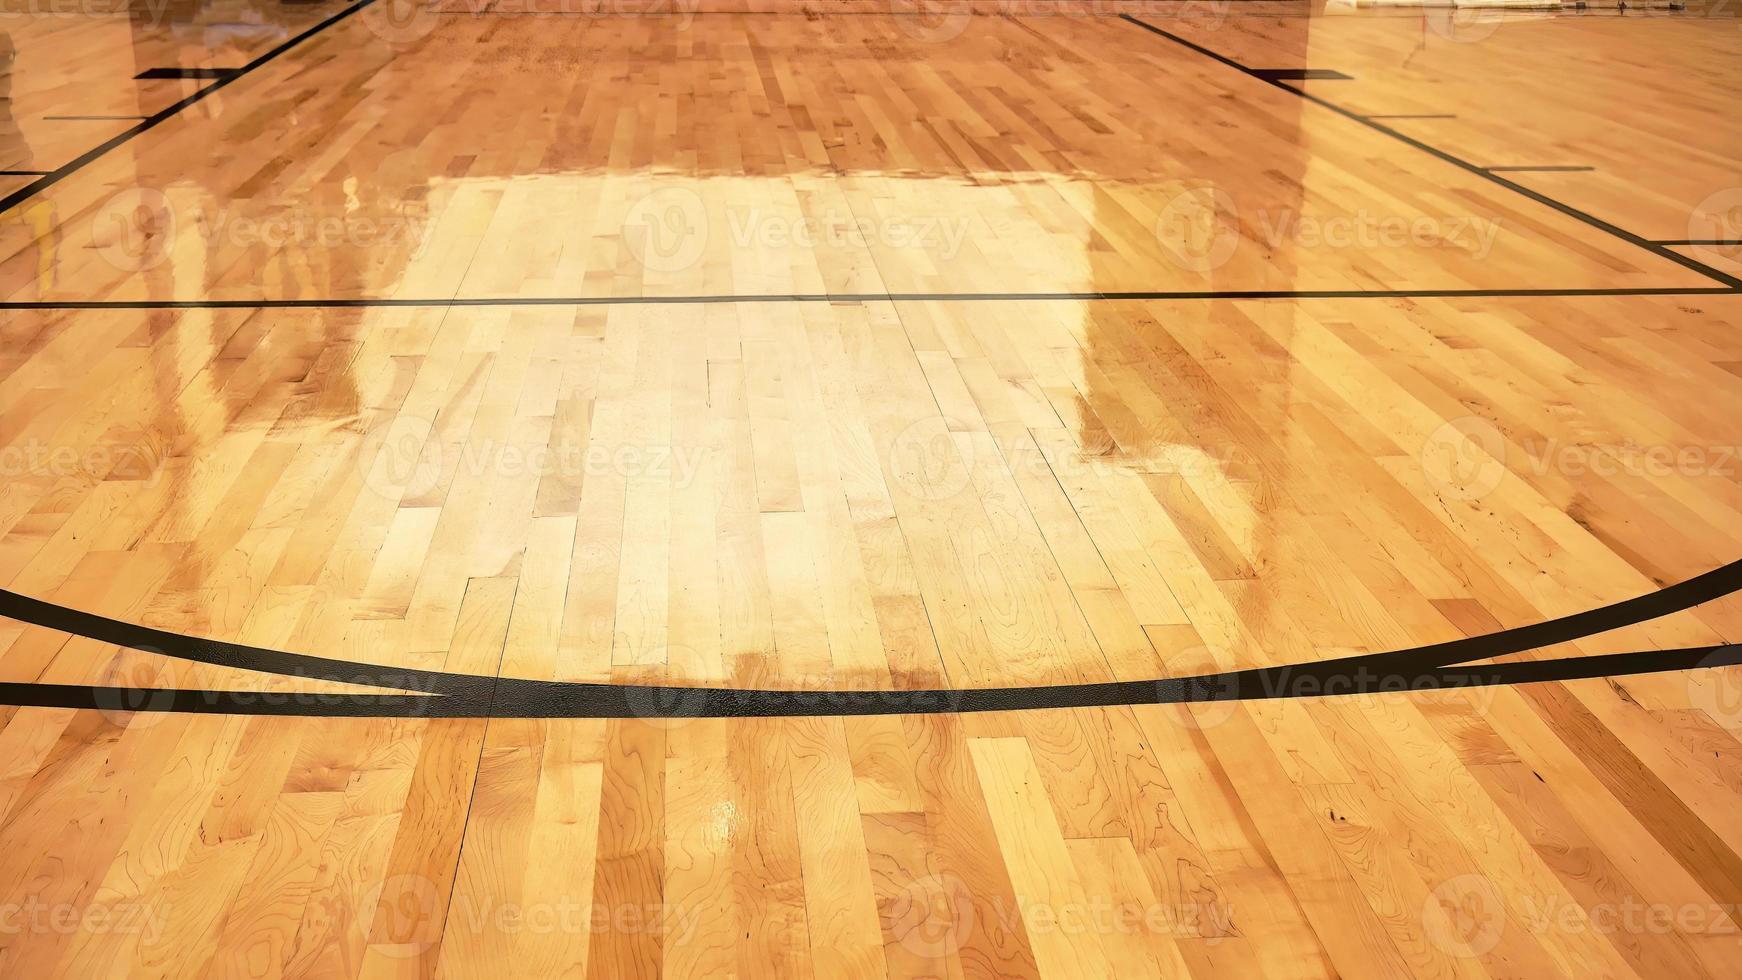 interieur van leeg modern basketbal binnen- sport rechtbank, halfglans coating houten vloer, kunstmatig lichten weerspiegeld foto